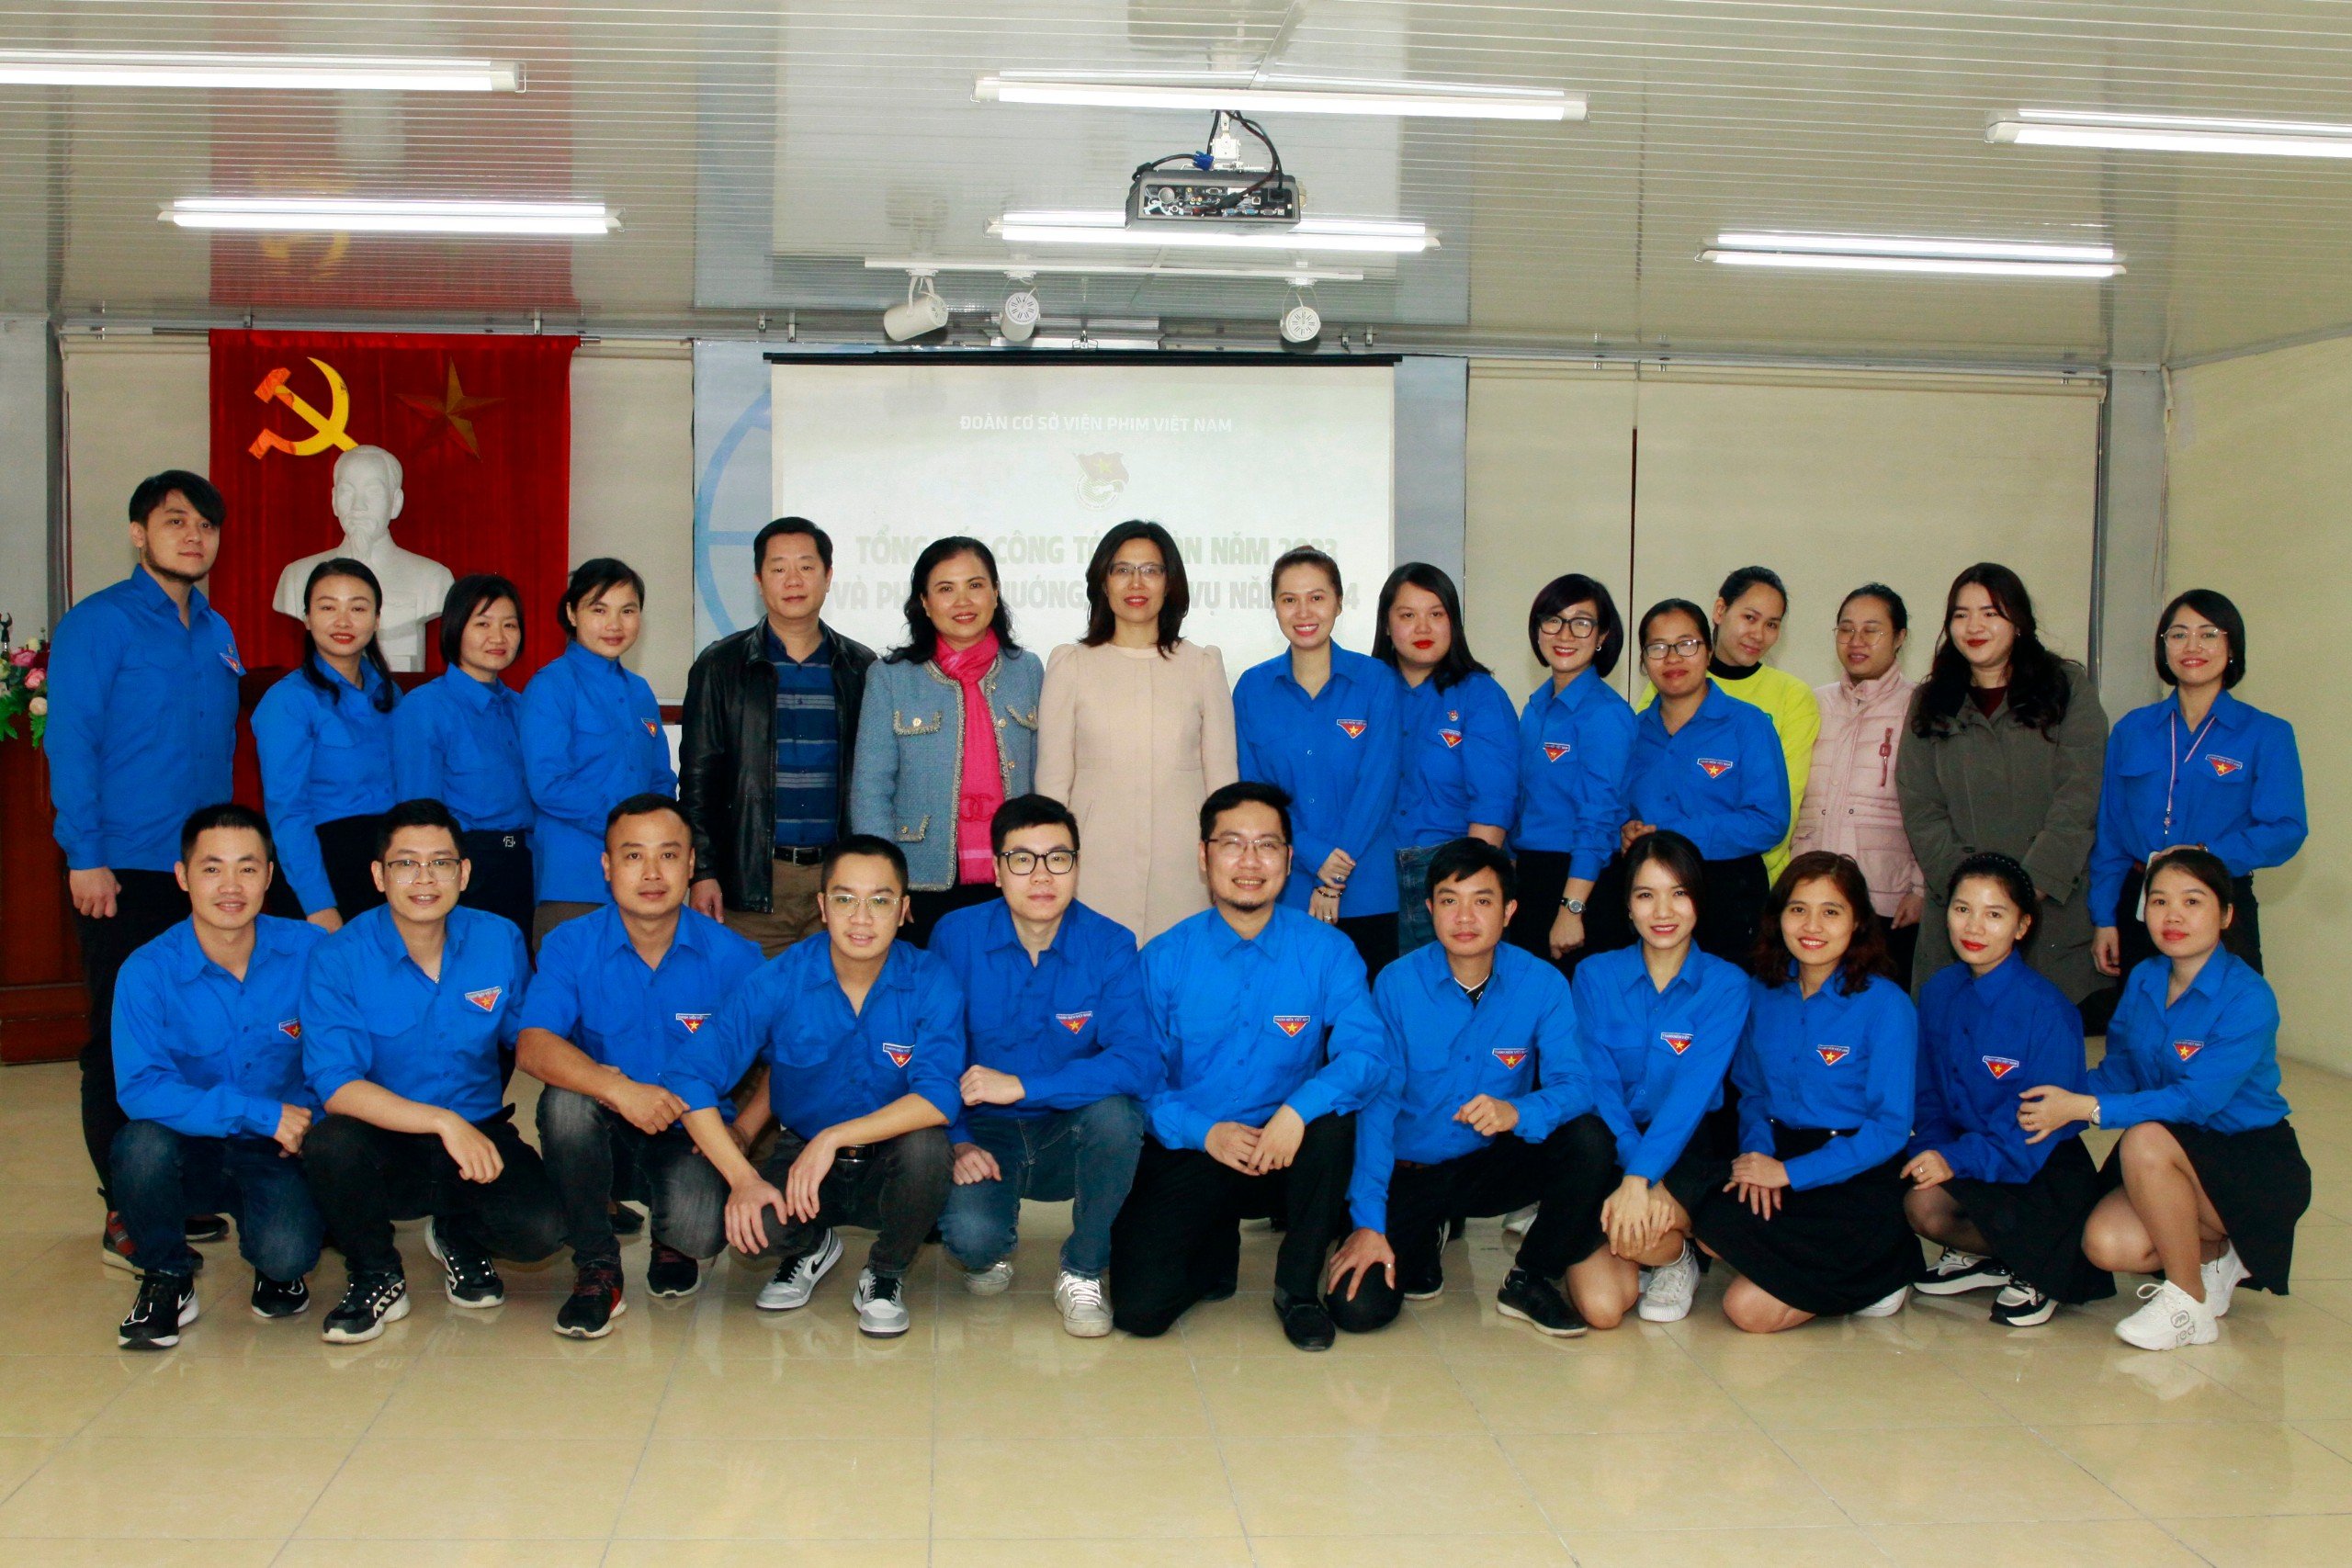 Đoàn thanh niên Viện Phim Việt Nam tổ chức Hội nghị Tổng kết công tác Đoàn năm 2023 và Phương hướng, nhiệm vụ năm 2024